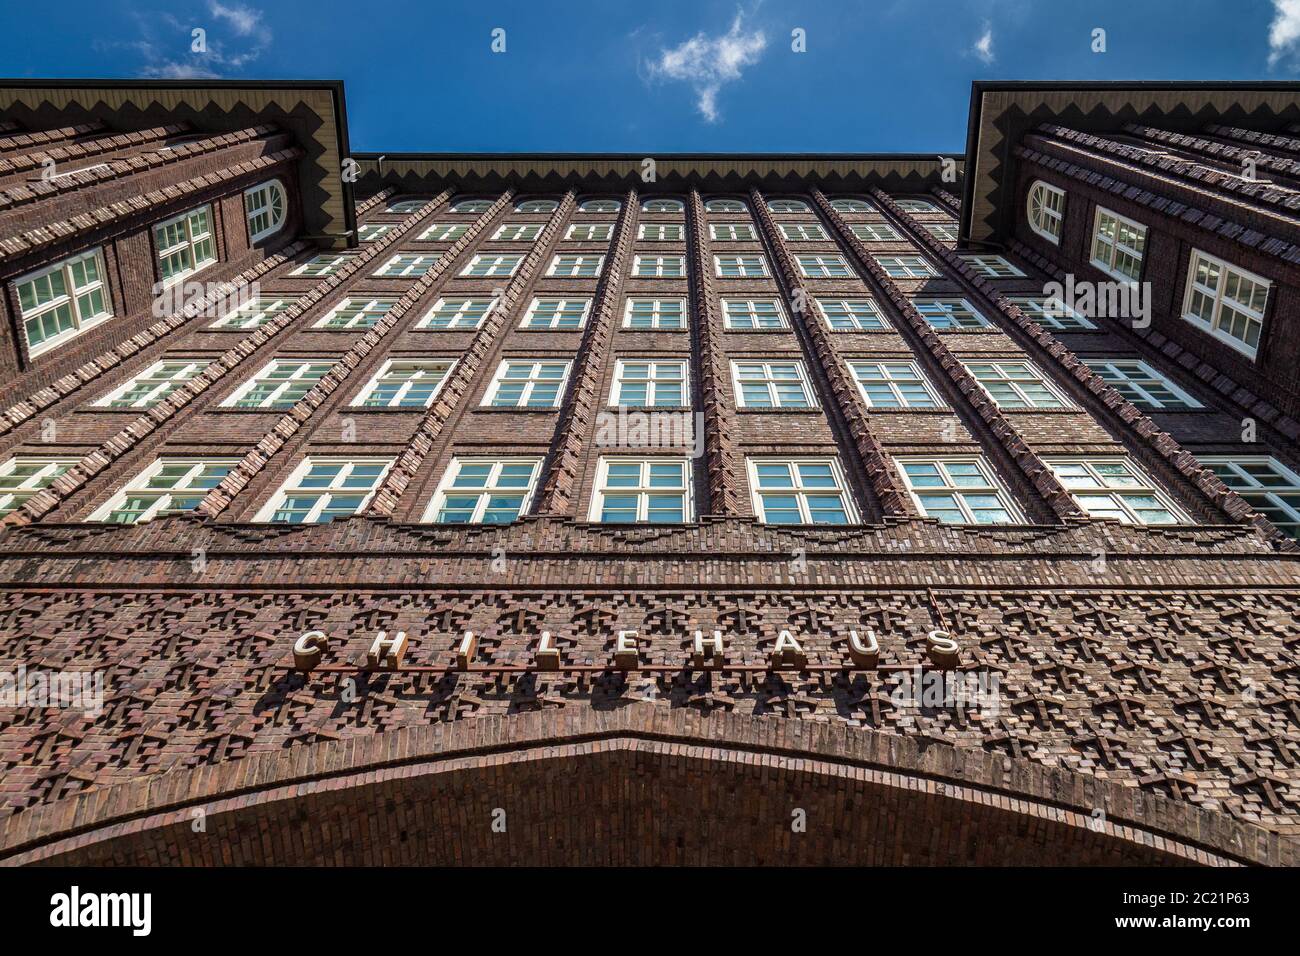 La ChileHaus à Hambourg - Chili - exemple de l'expressionnisme de brique 1920 architecture - architecte Fritz Höger terminé 1924 Banque D'Images